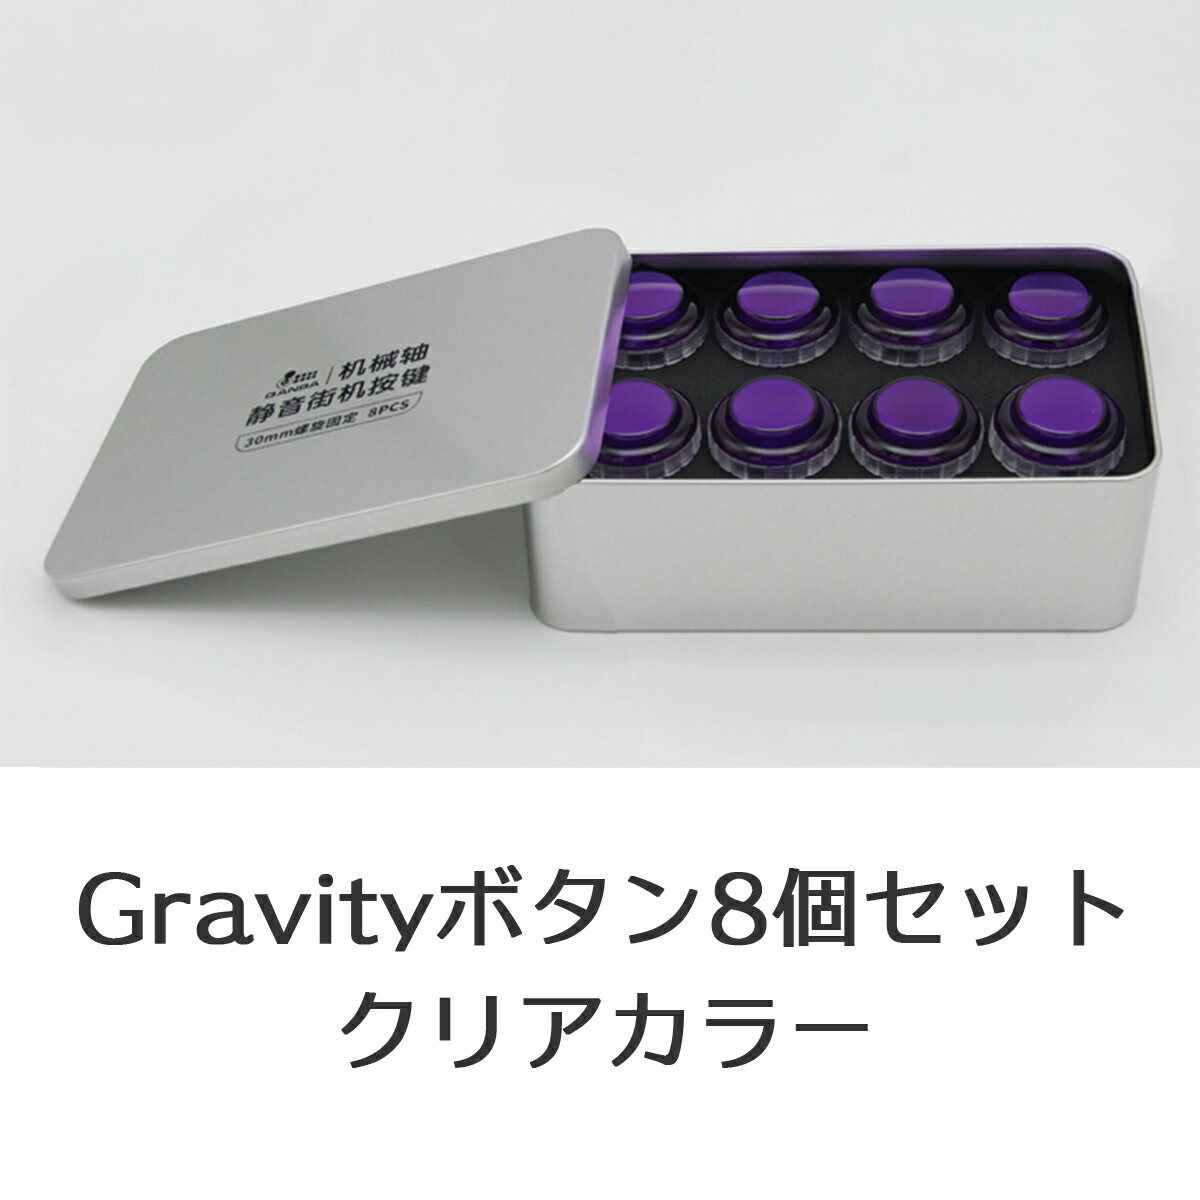 【ネジ式 30φ クリア 8個セット】Qanba Gravity XL クァンバ グラビティ XL メカニカルスイッチ アーケード ボタン 30mm C（ビデオゲームボタンサイズ） 静粛性45dB 耐久性7000万回 アクチュエーションポイント1.5mm 押下荷重50g リニア カスタムアートワーク対応